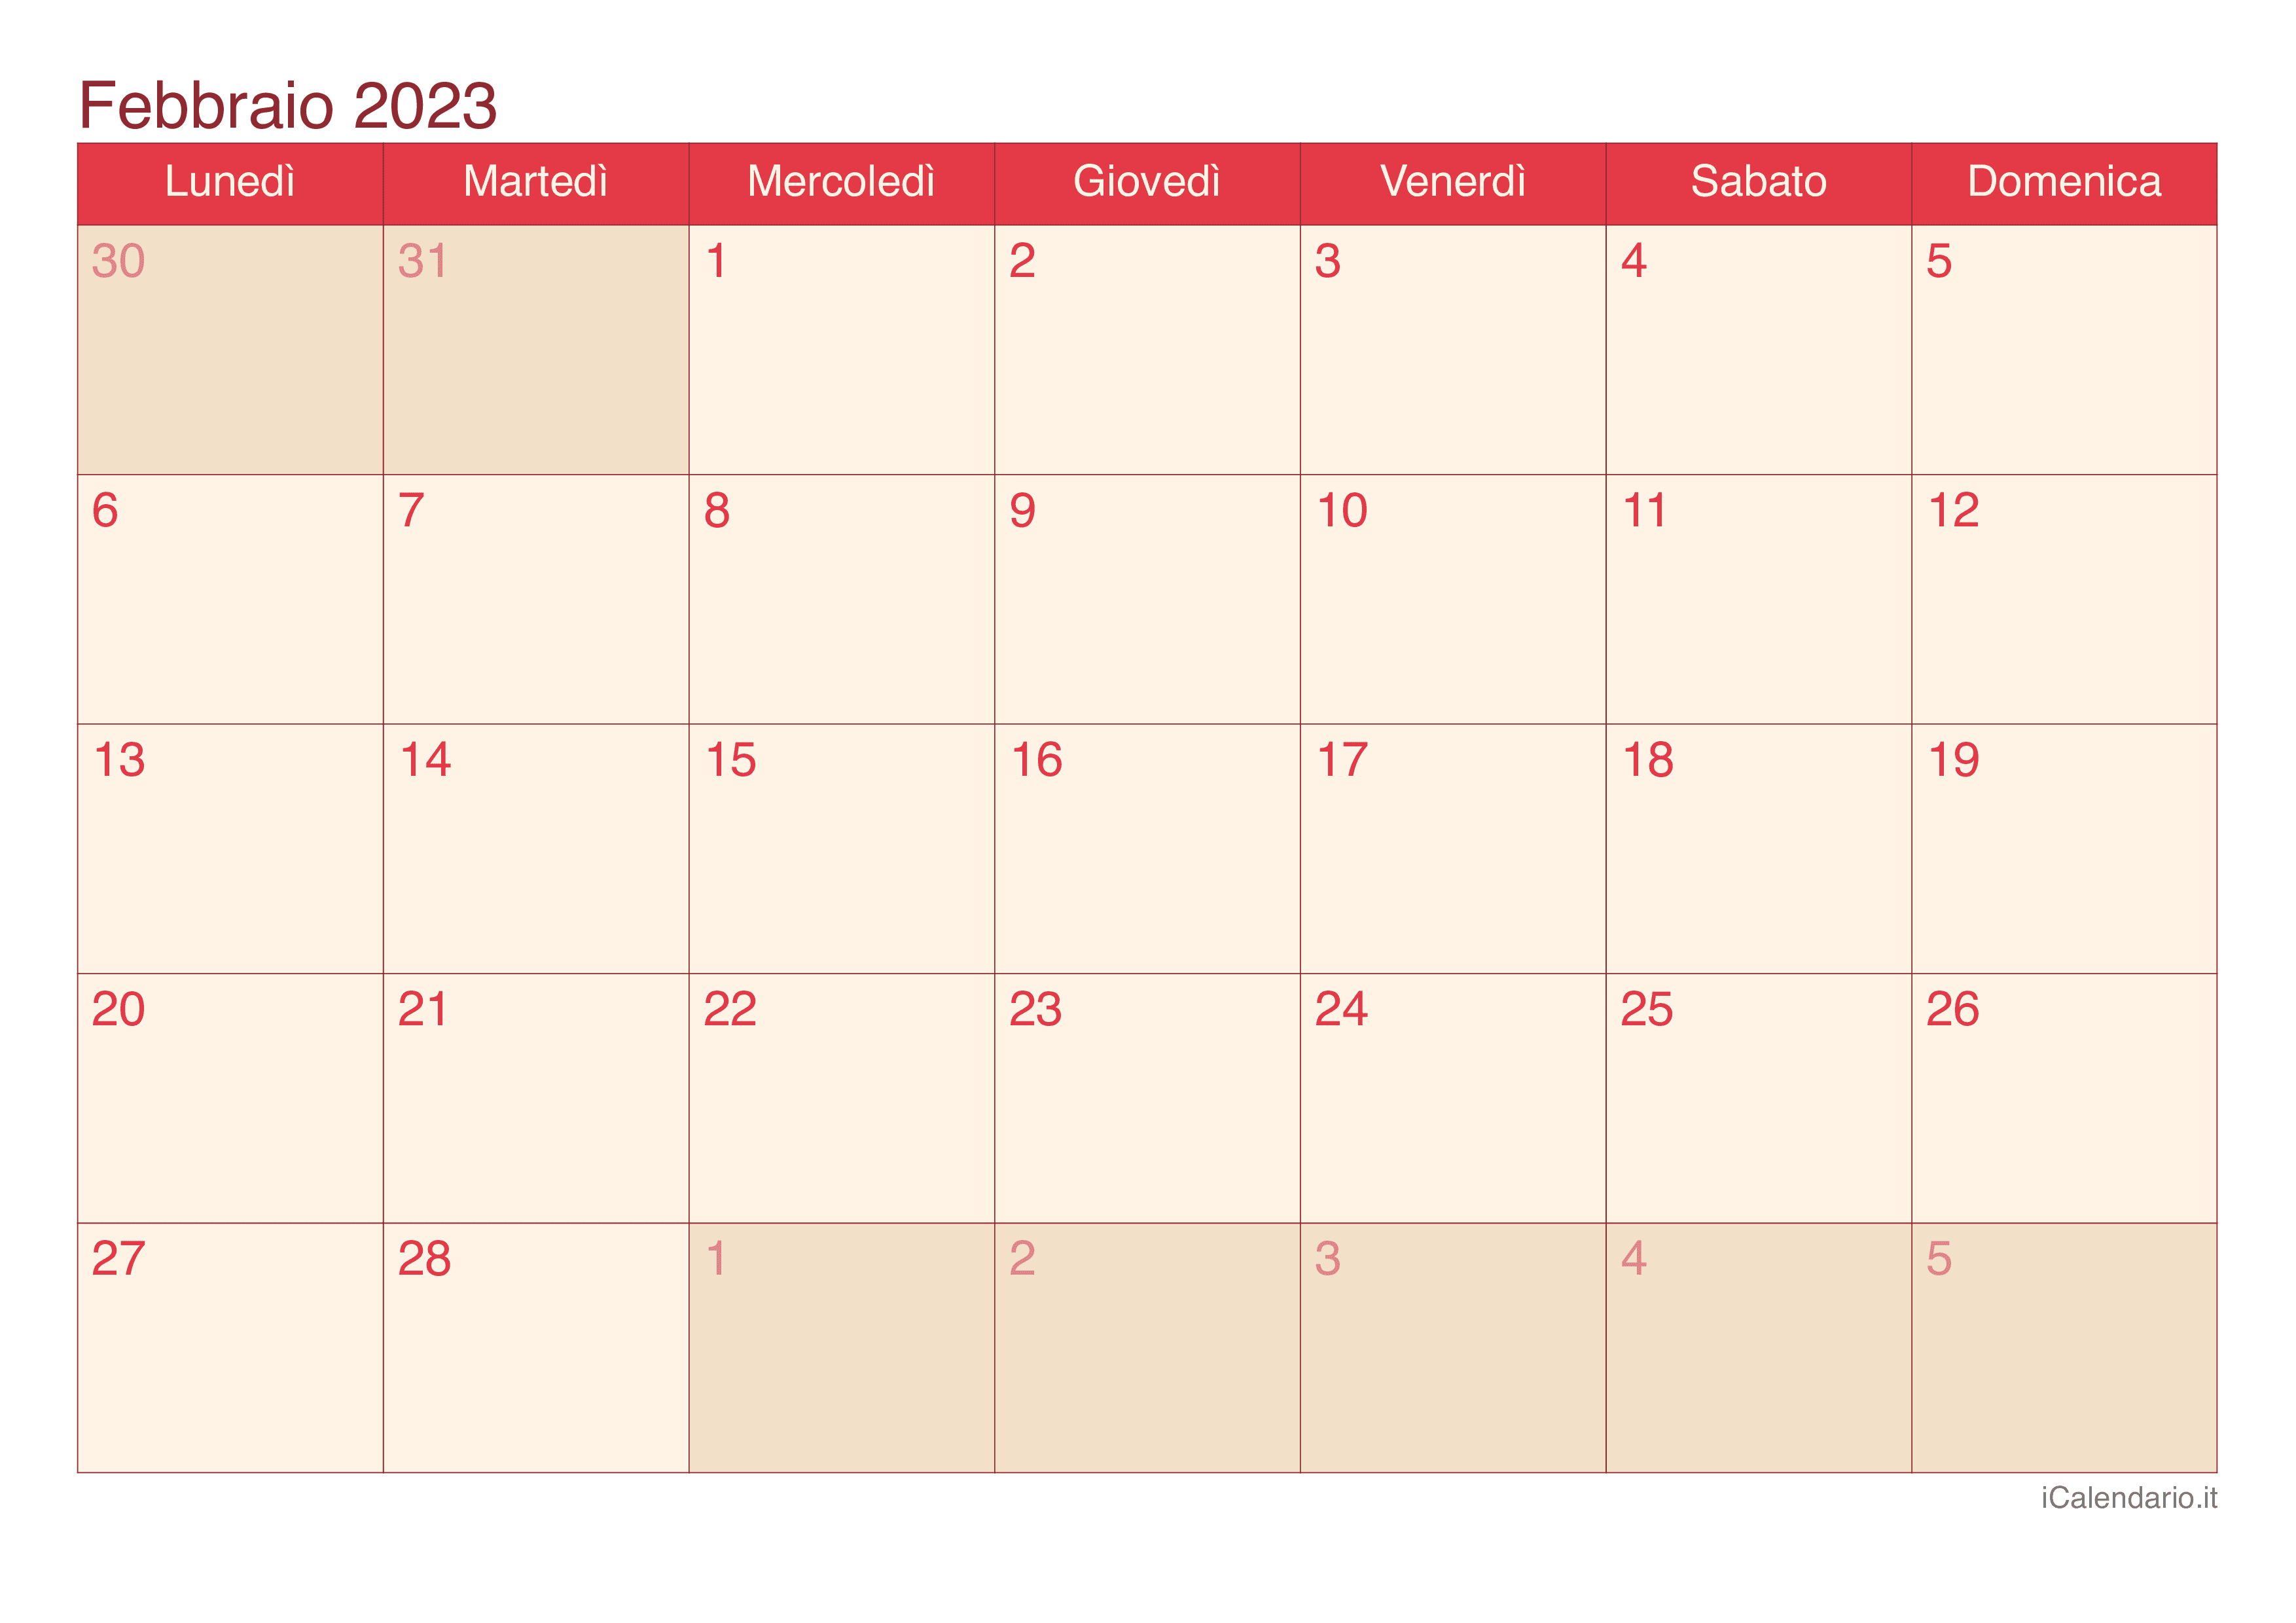 Calendario di febbraio 2023 - Cherry